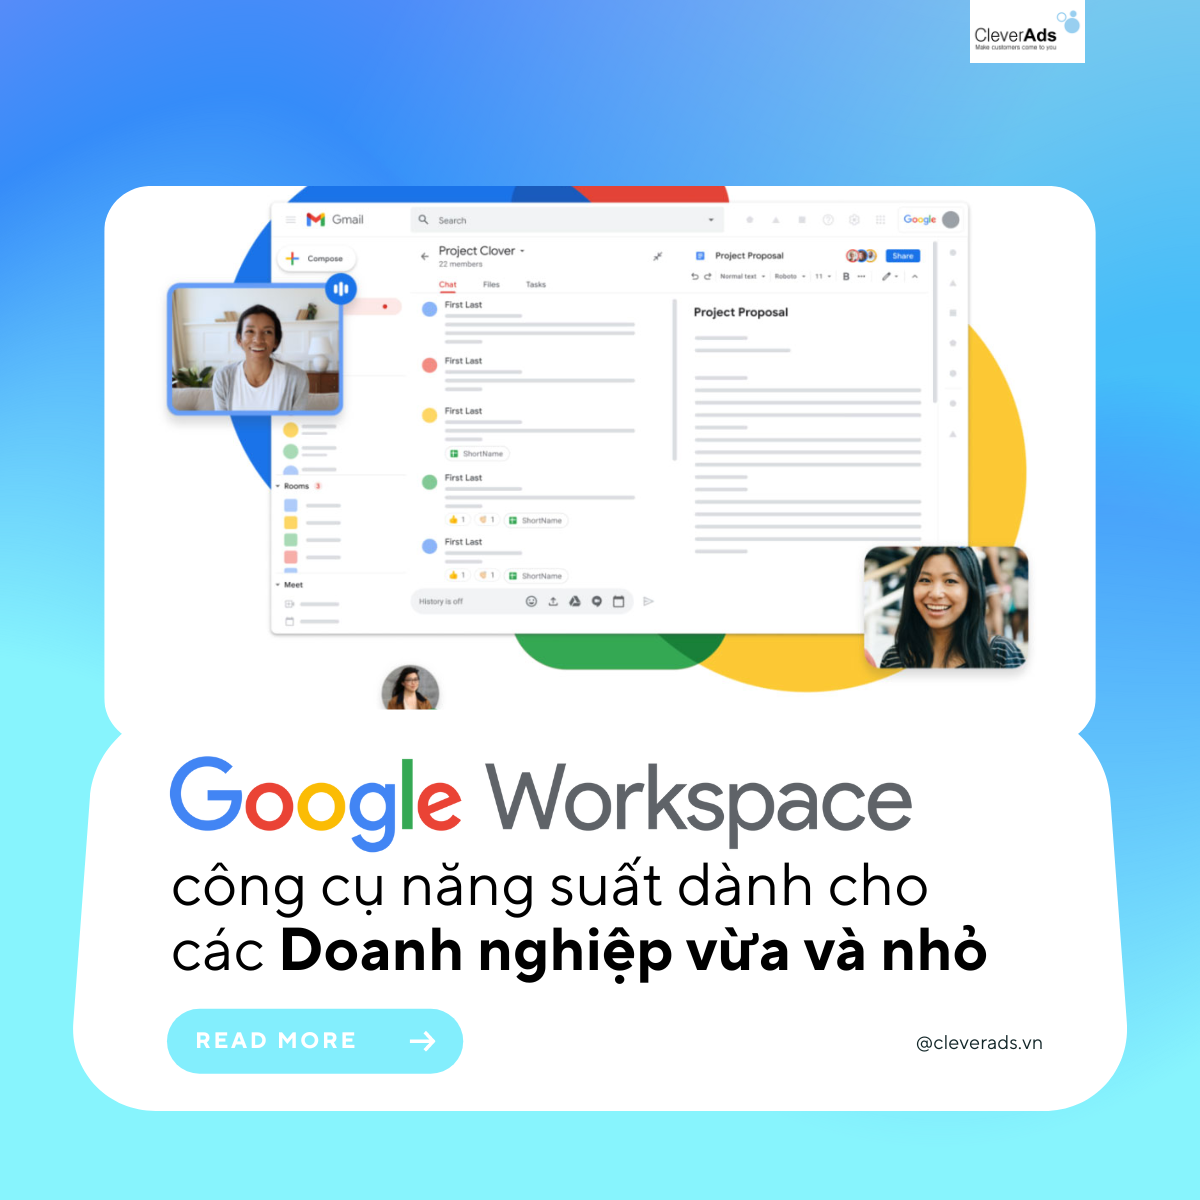 Đại lý Google Workspace